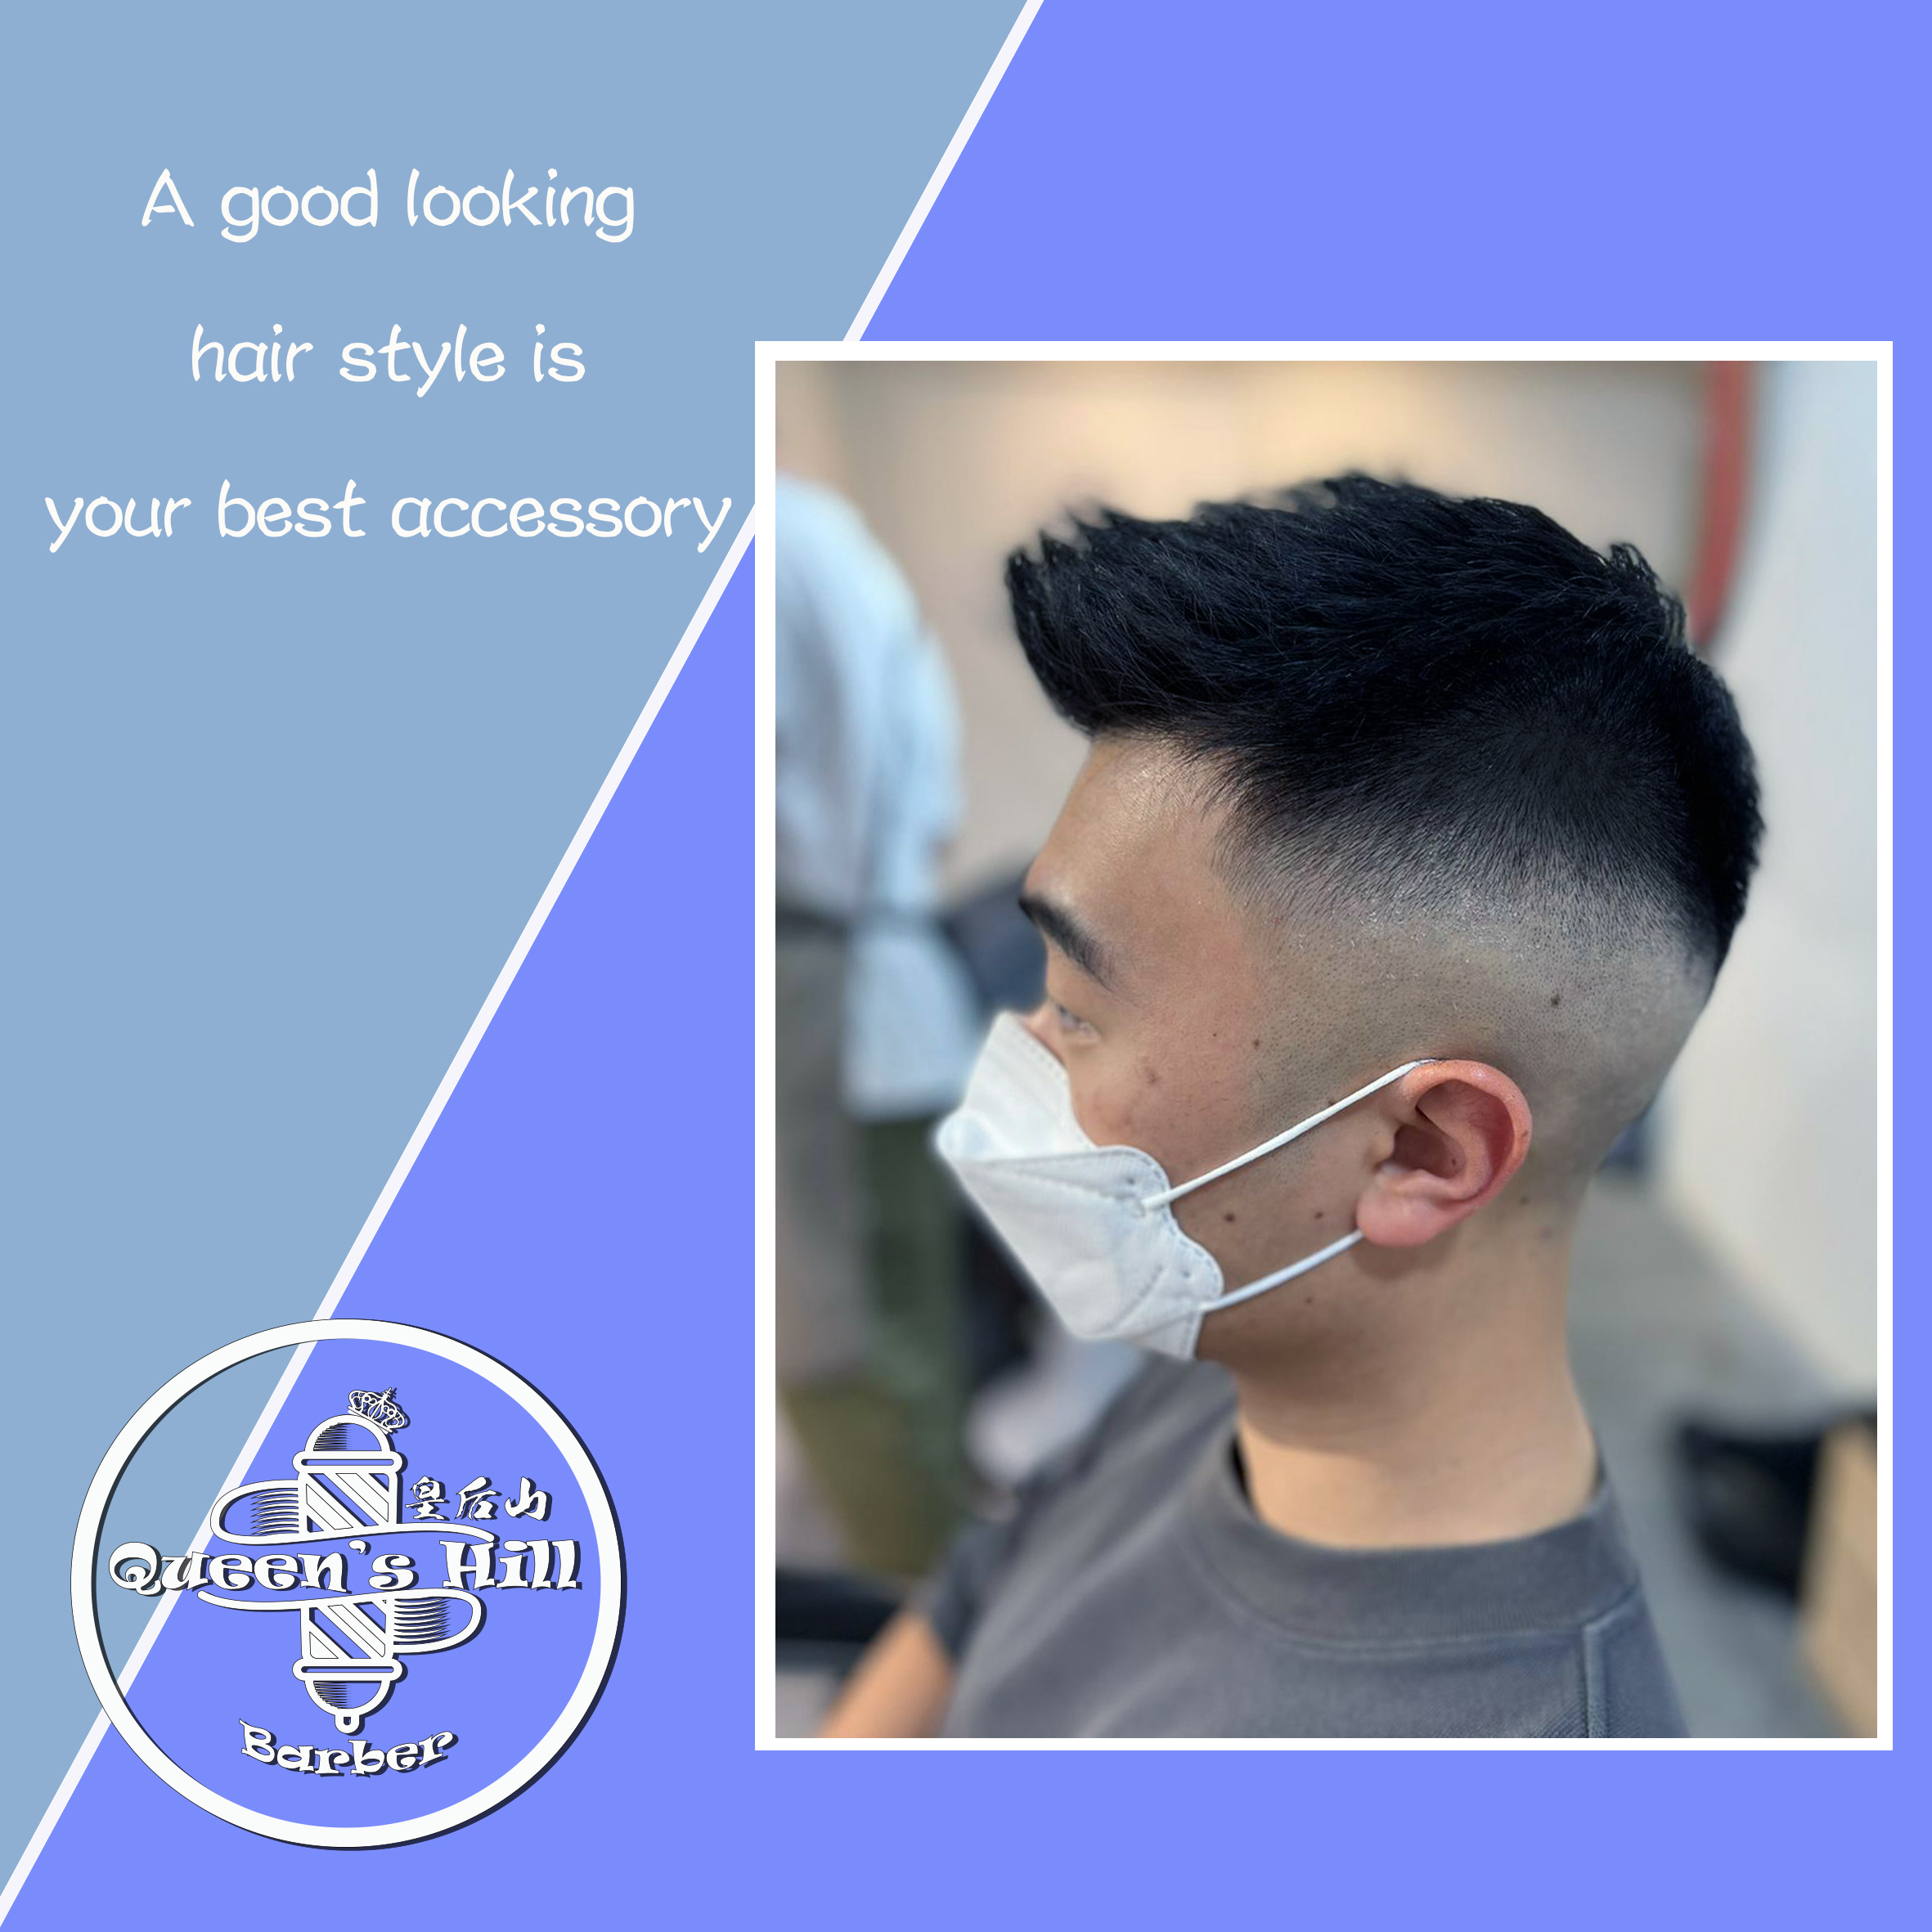 髮型作品參考:Hair cut & Styling services $120